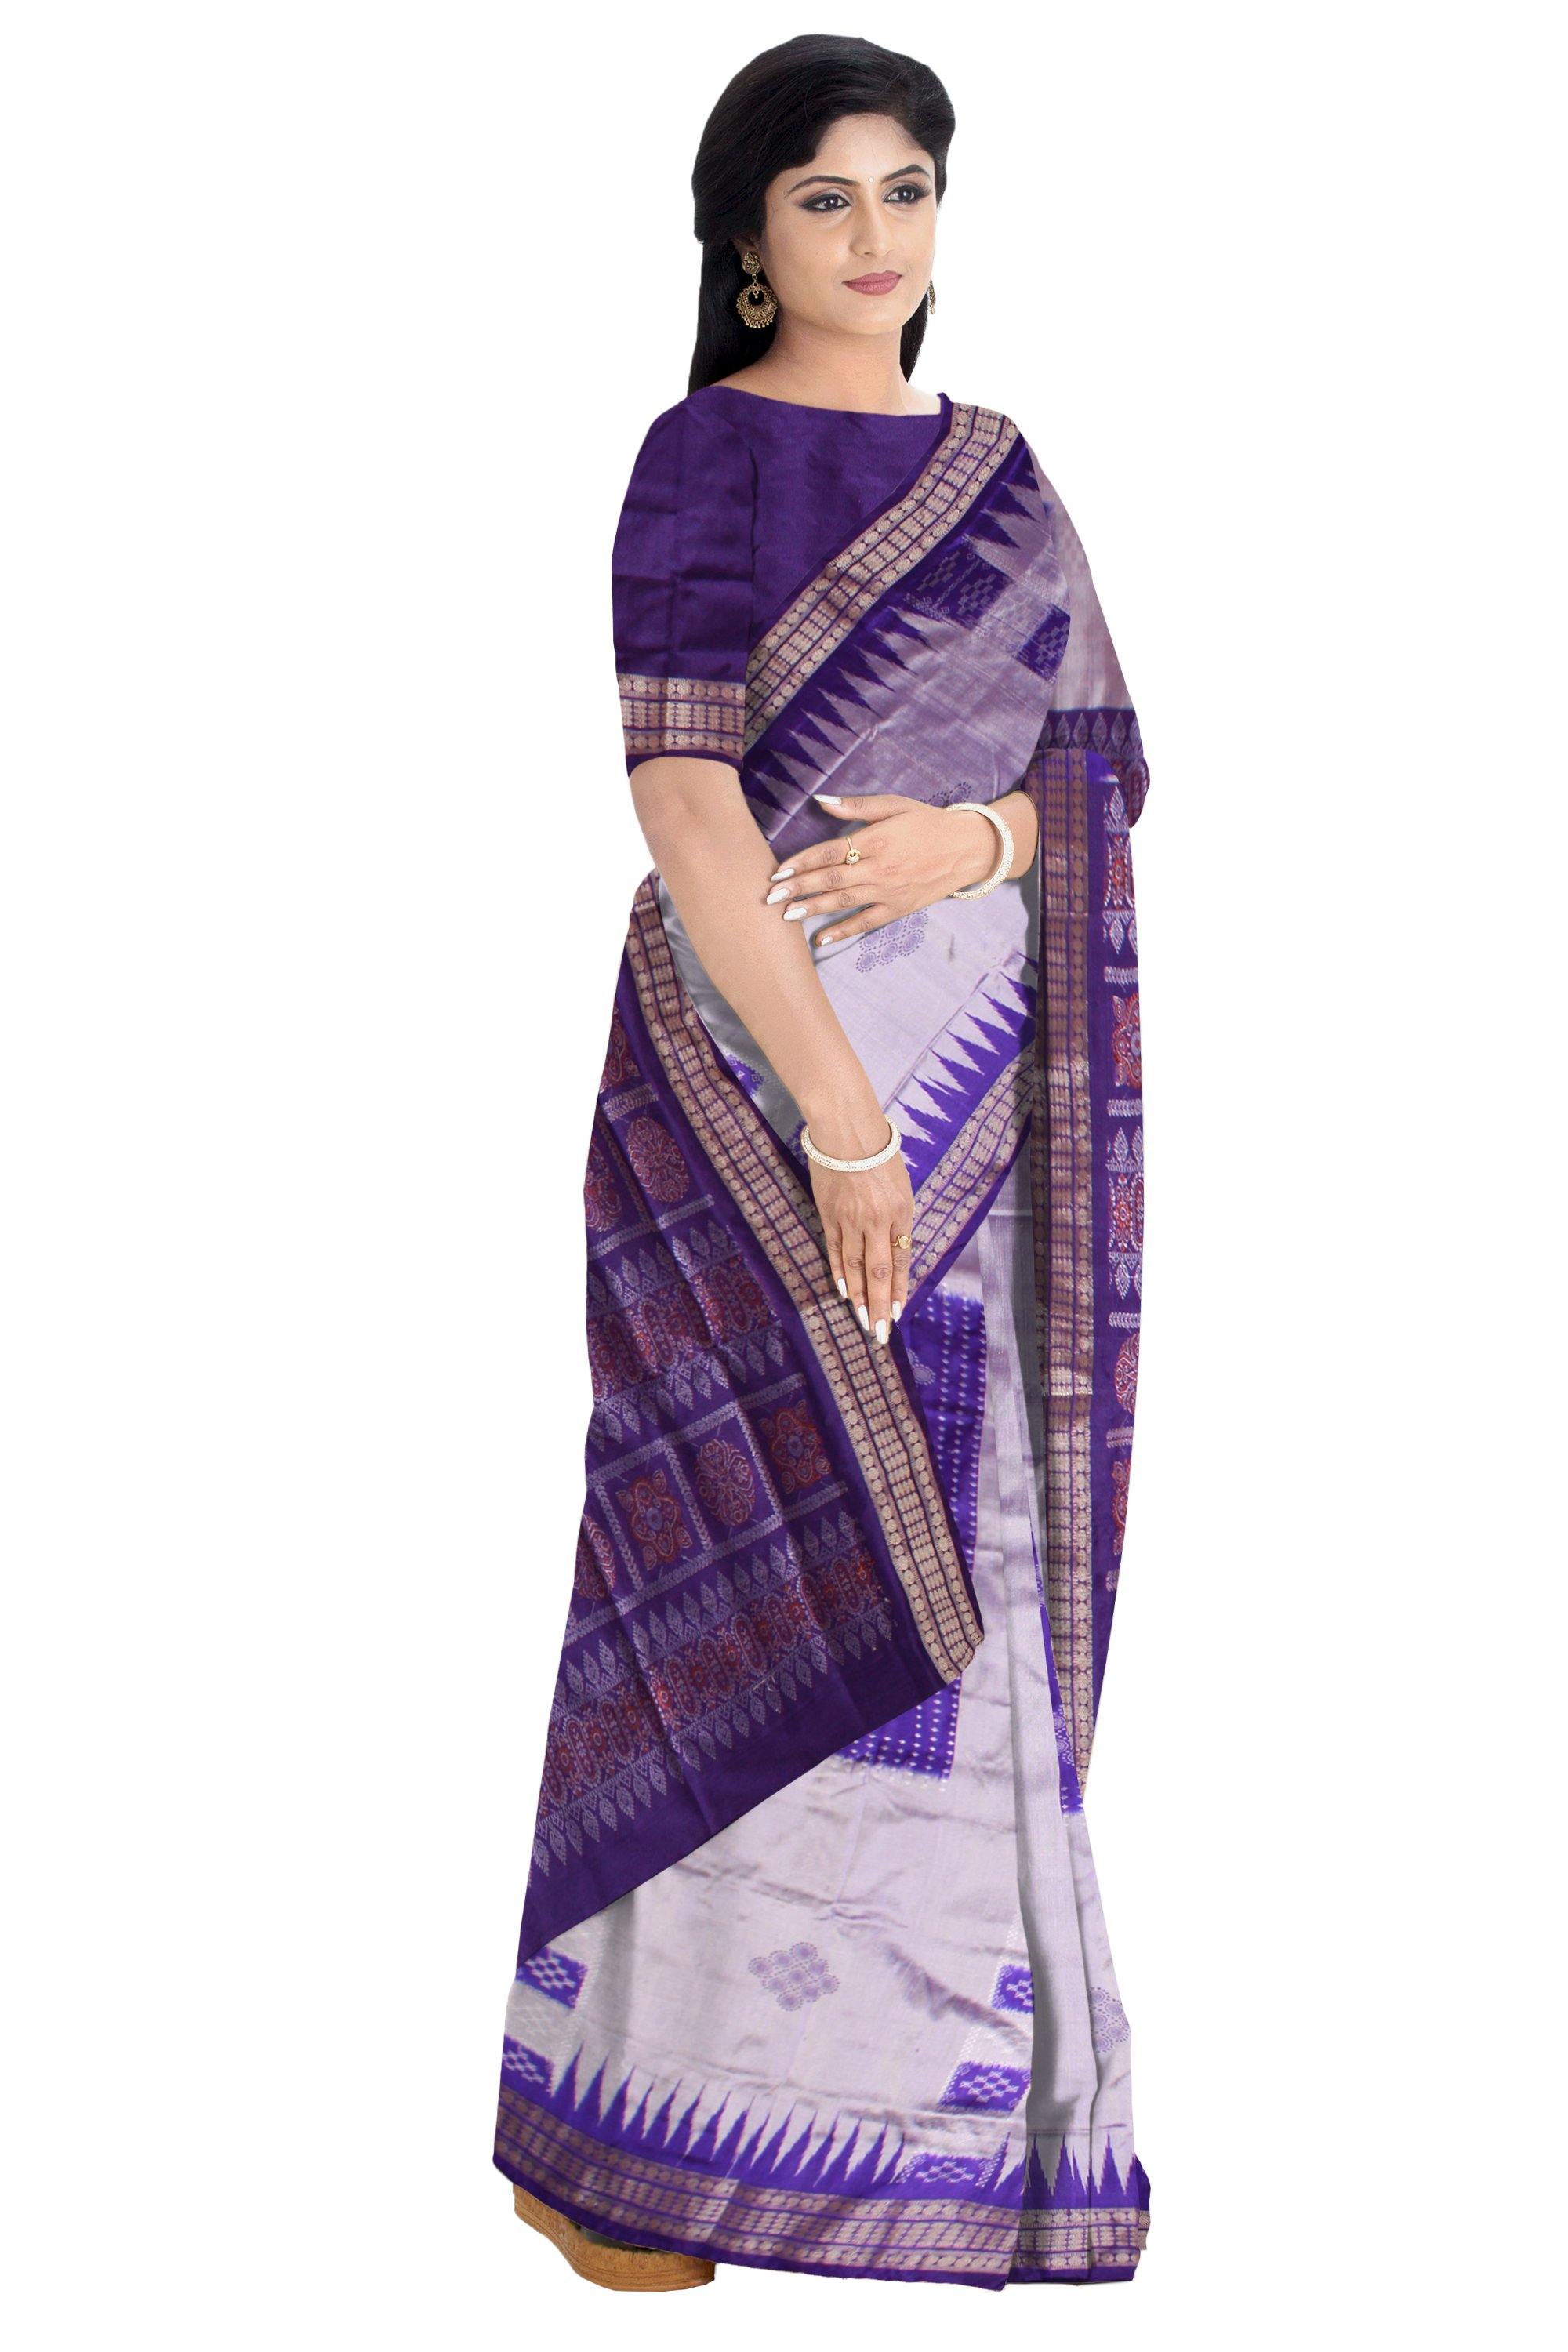 Sambalpuri gray blue chandua pata with blouse piece - Koshali Arts & Crafts Enterprise